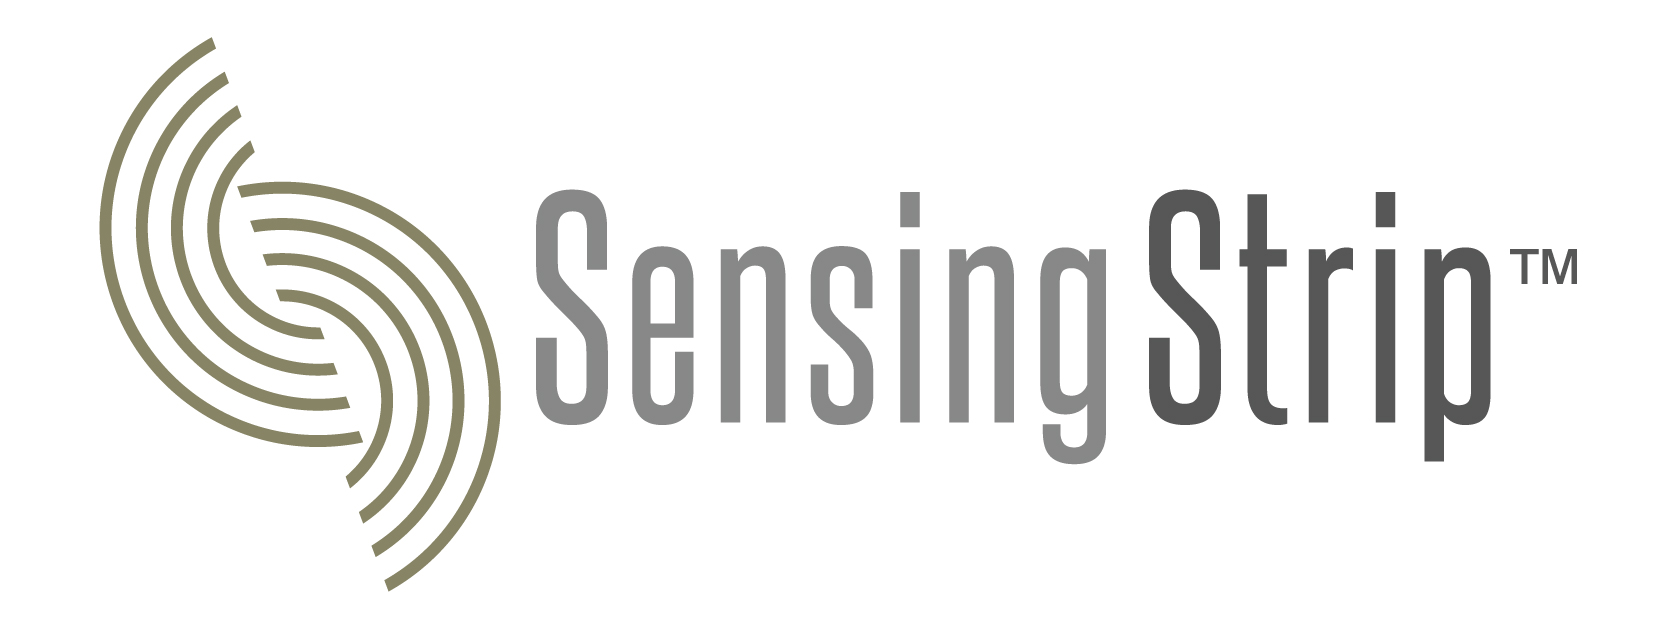 sensingstrip_logo-01.jpg